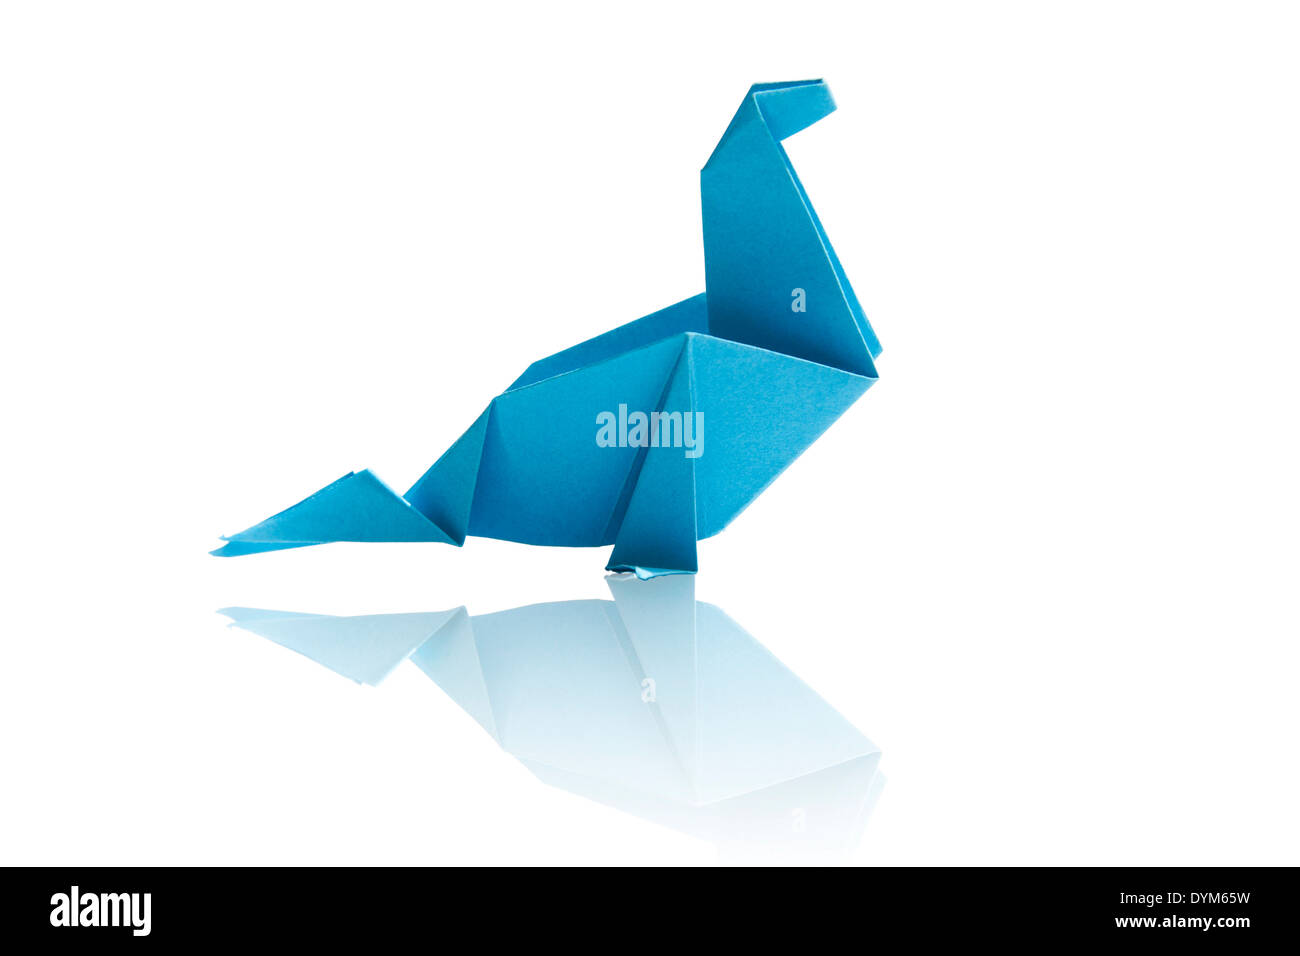 Blue origami dinosaur isolated on white background. Stock Photo